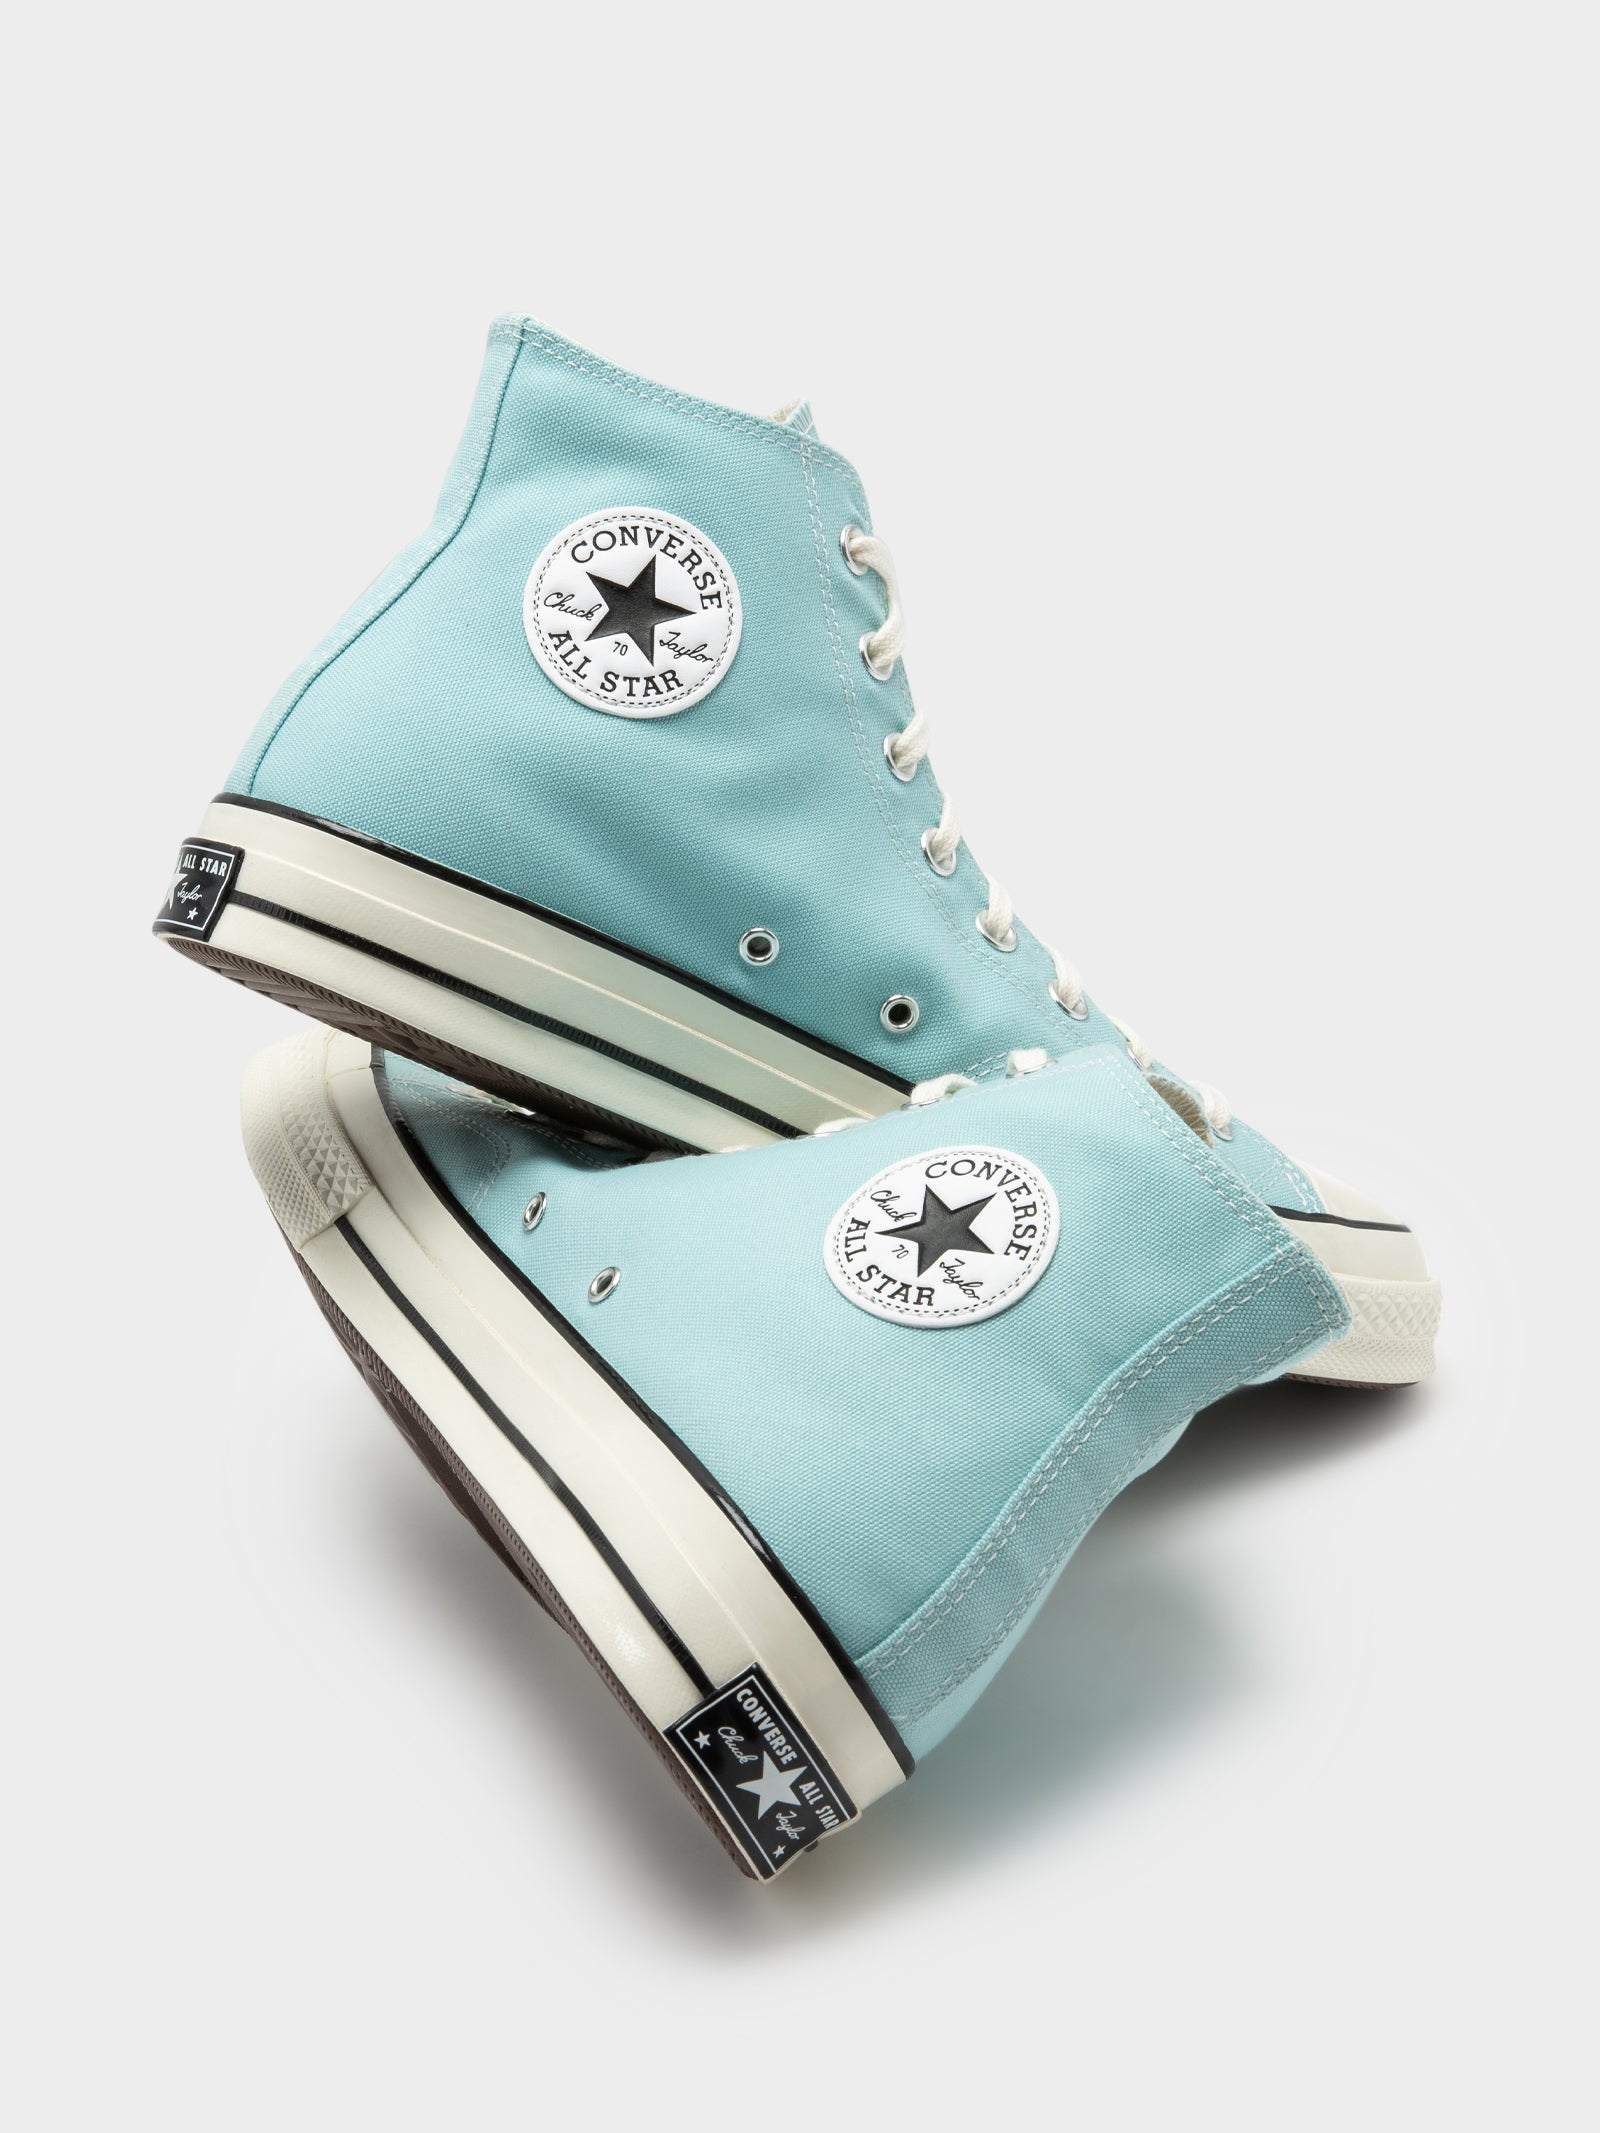 Converse Shoes & | Footwear | Glue - Glue Store NZ